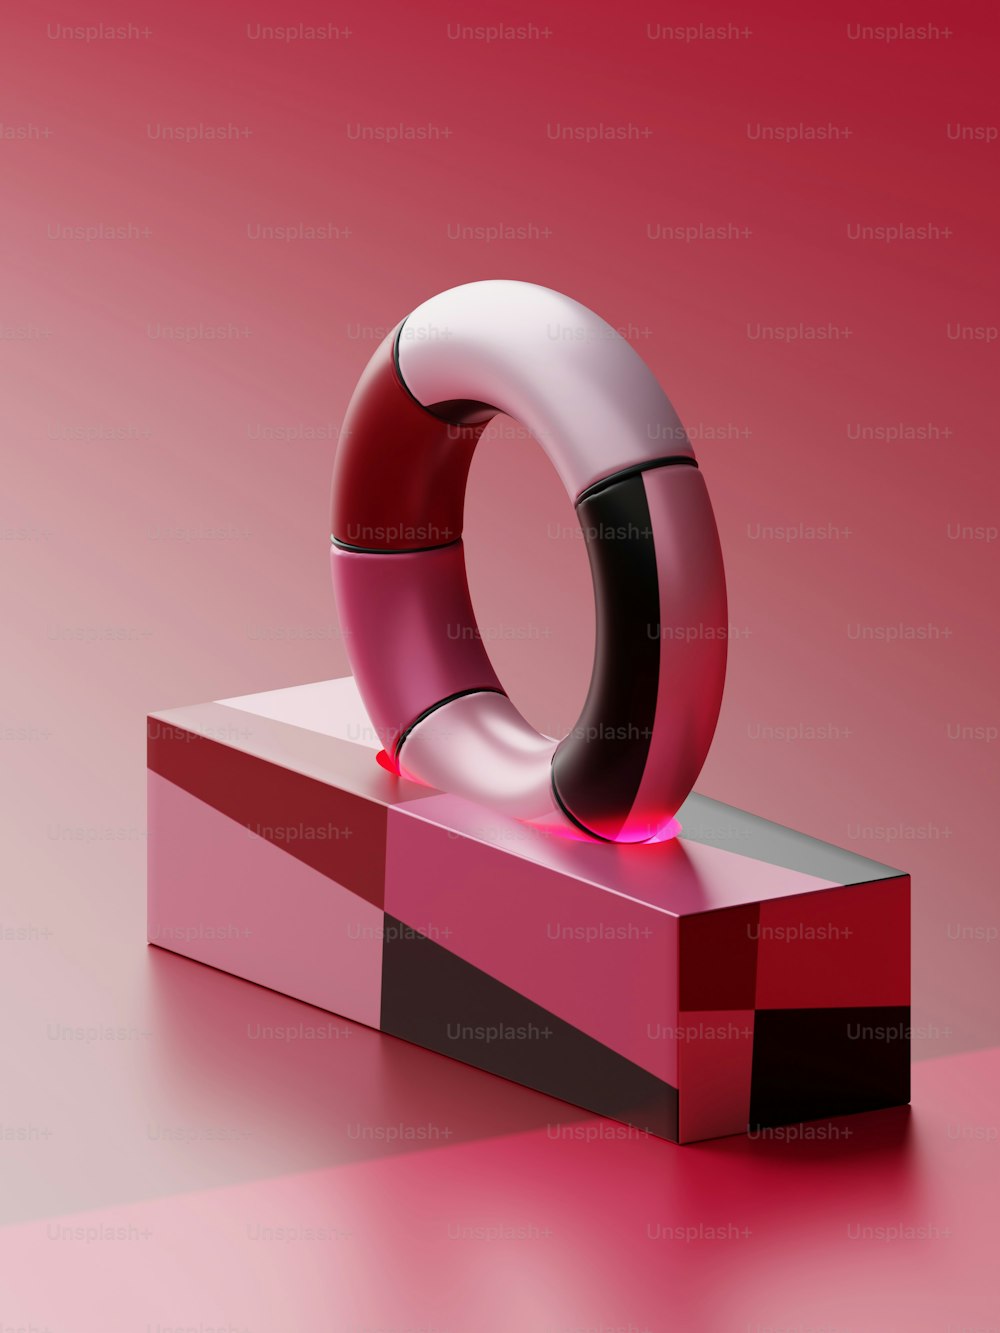 Un objeto rojo y negro sobre una superficie rosada